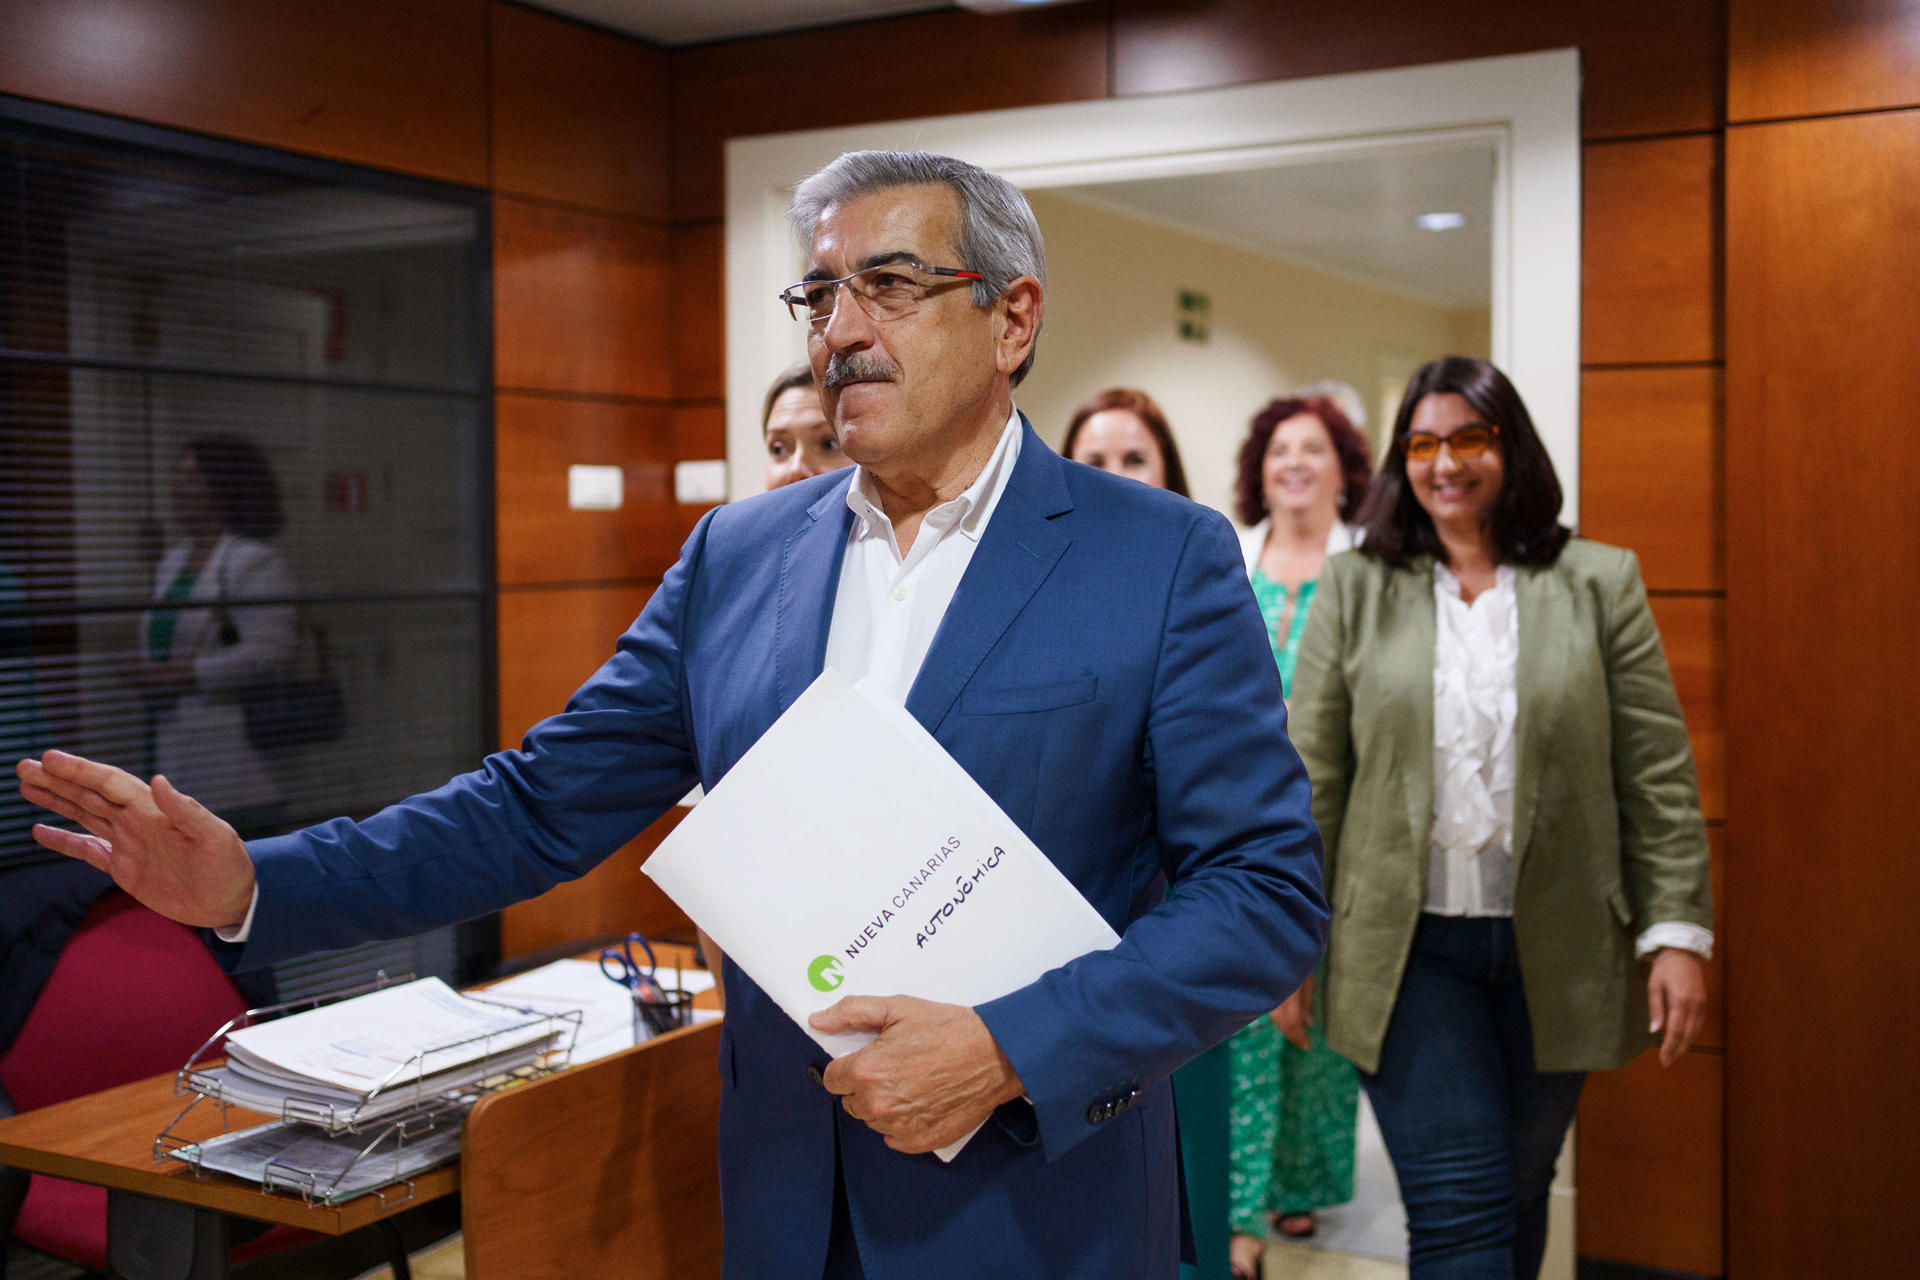 El presidente de Nueva Canarias, Román Rodríguez (4d), presentó este sábado su candidatura a la presidencia del Gobierno de Canarias, en el registro de la Cámara Regional. EFE/Ramón de la Rocha